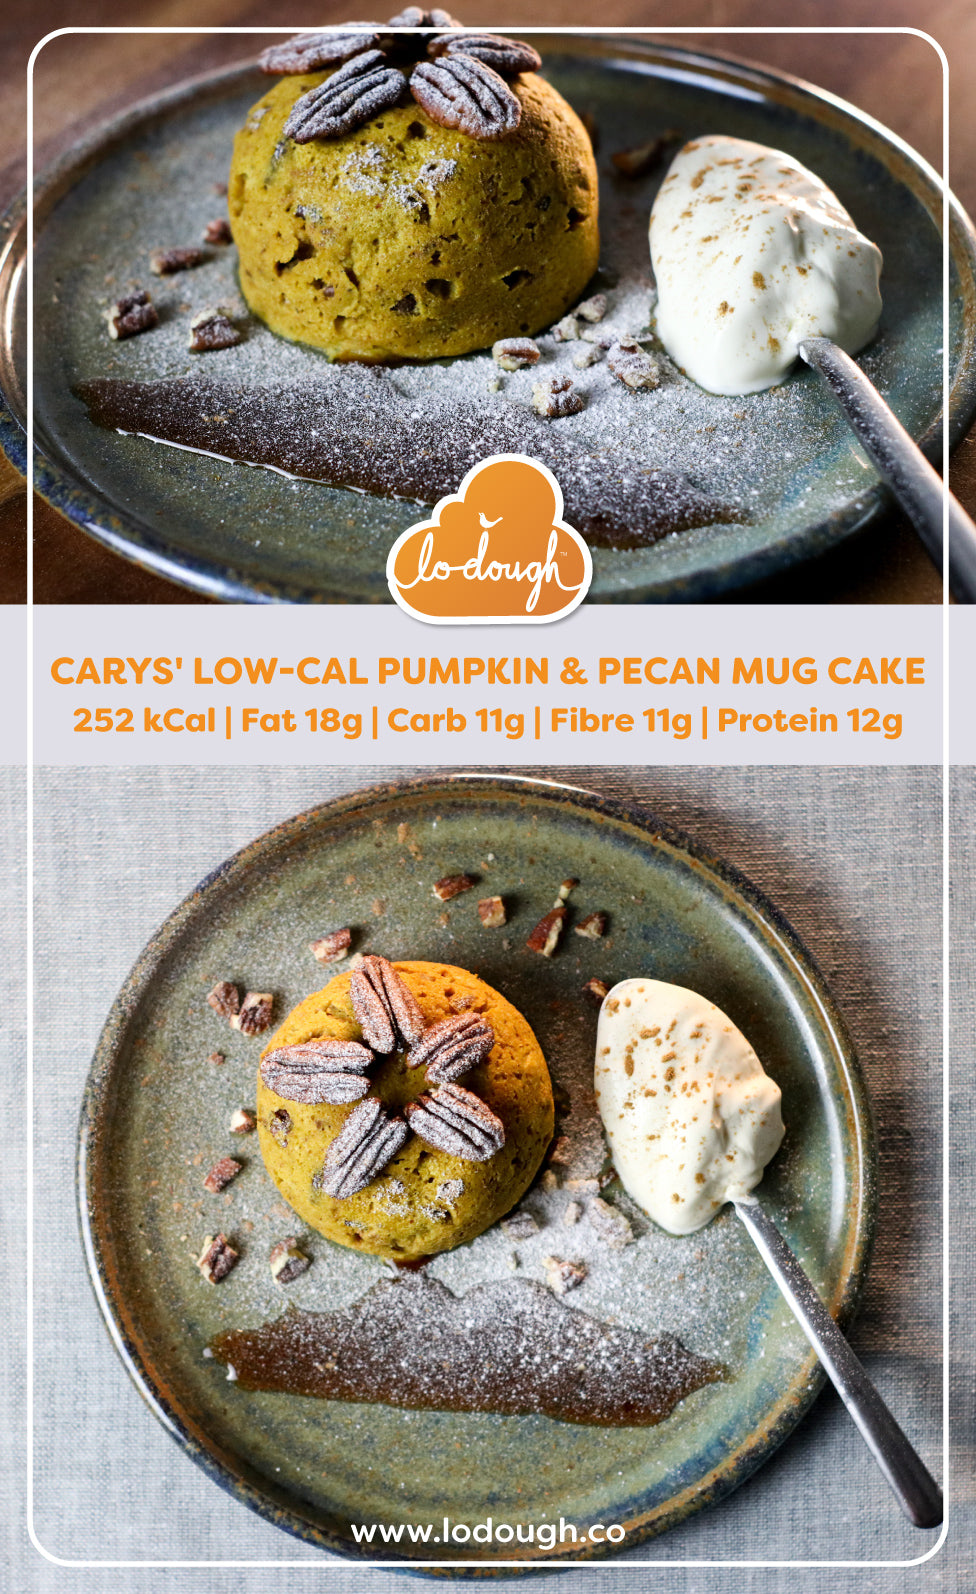 Low calorie Pupkin & Pecan Mug Cake